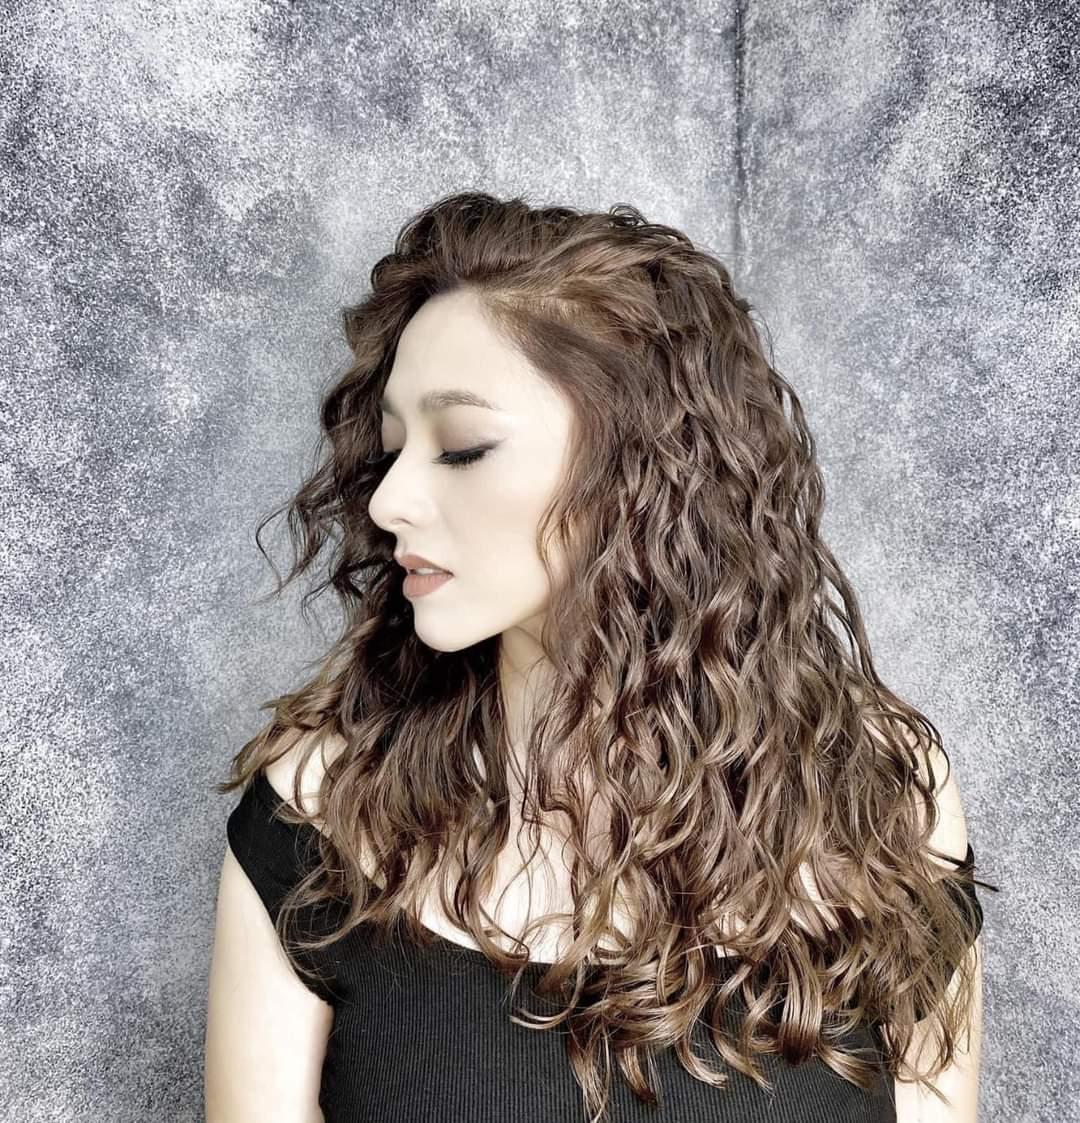 Top 10 Kiểu tóc đẹp dành cho phái mạnh - Mytour.vn